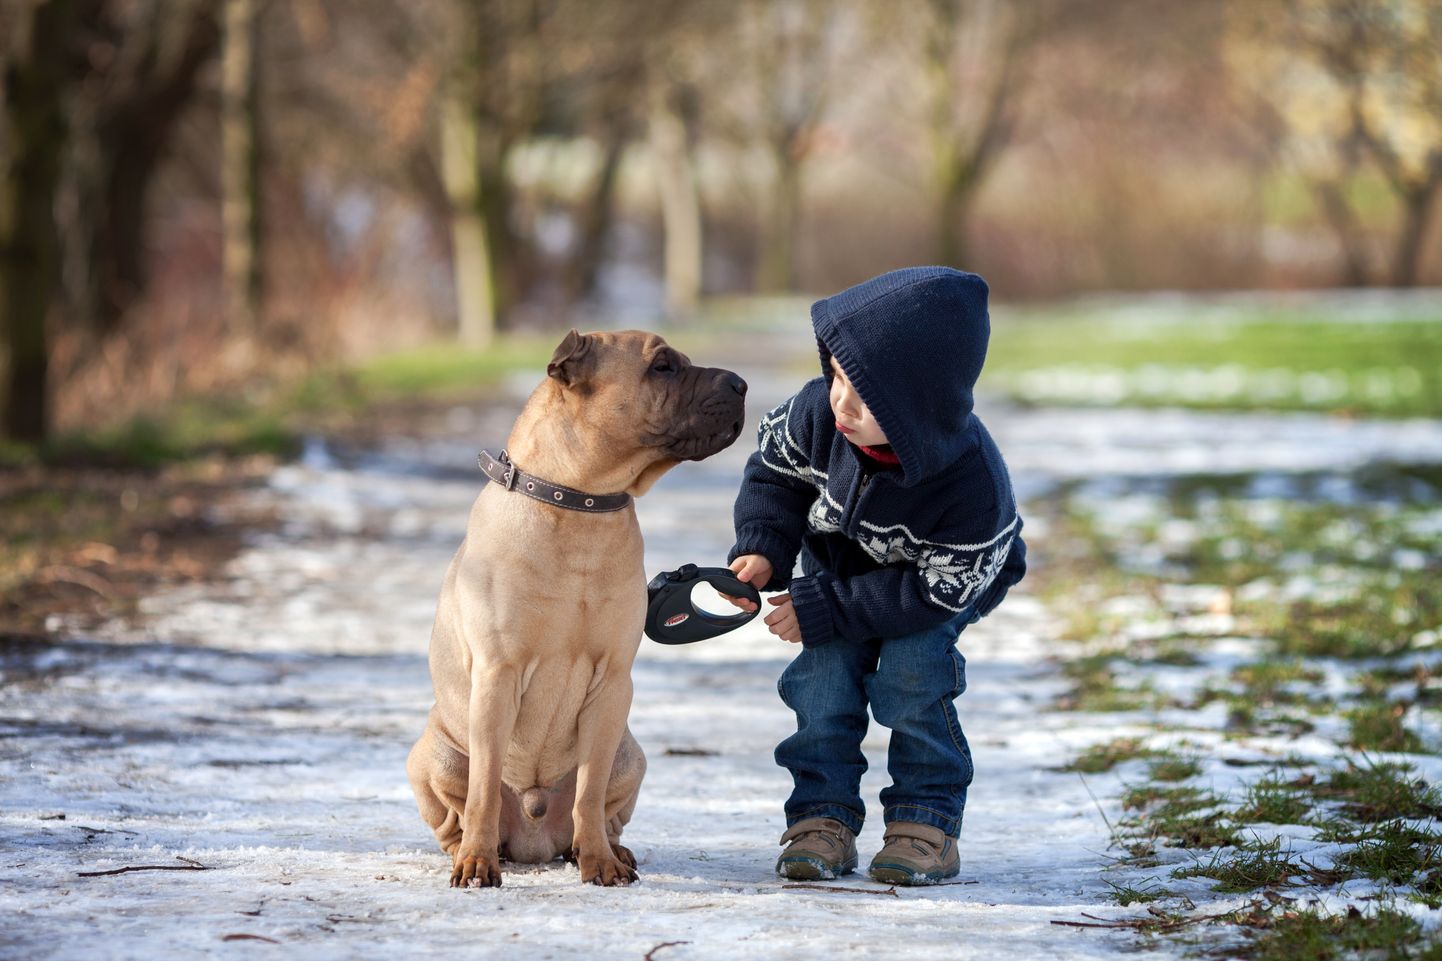 Bērns un suns ziemā. Ilustratīvs foto.